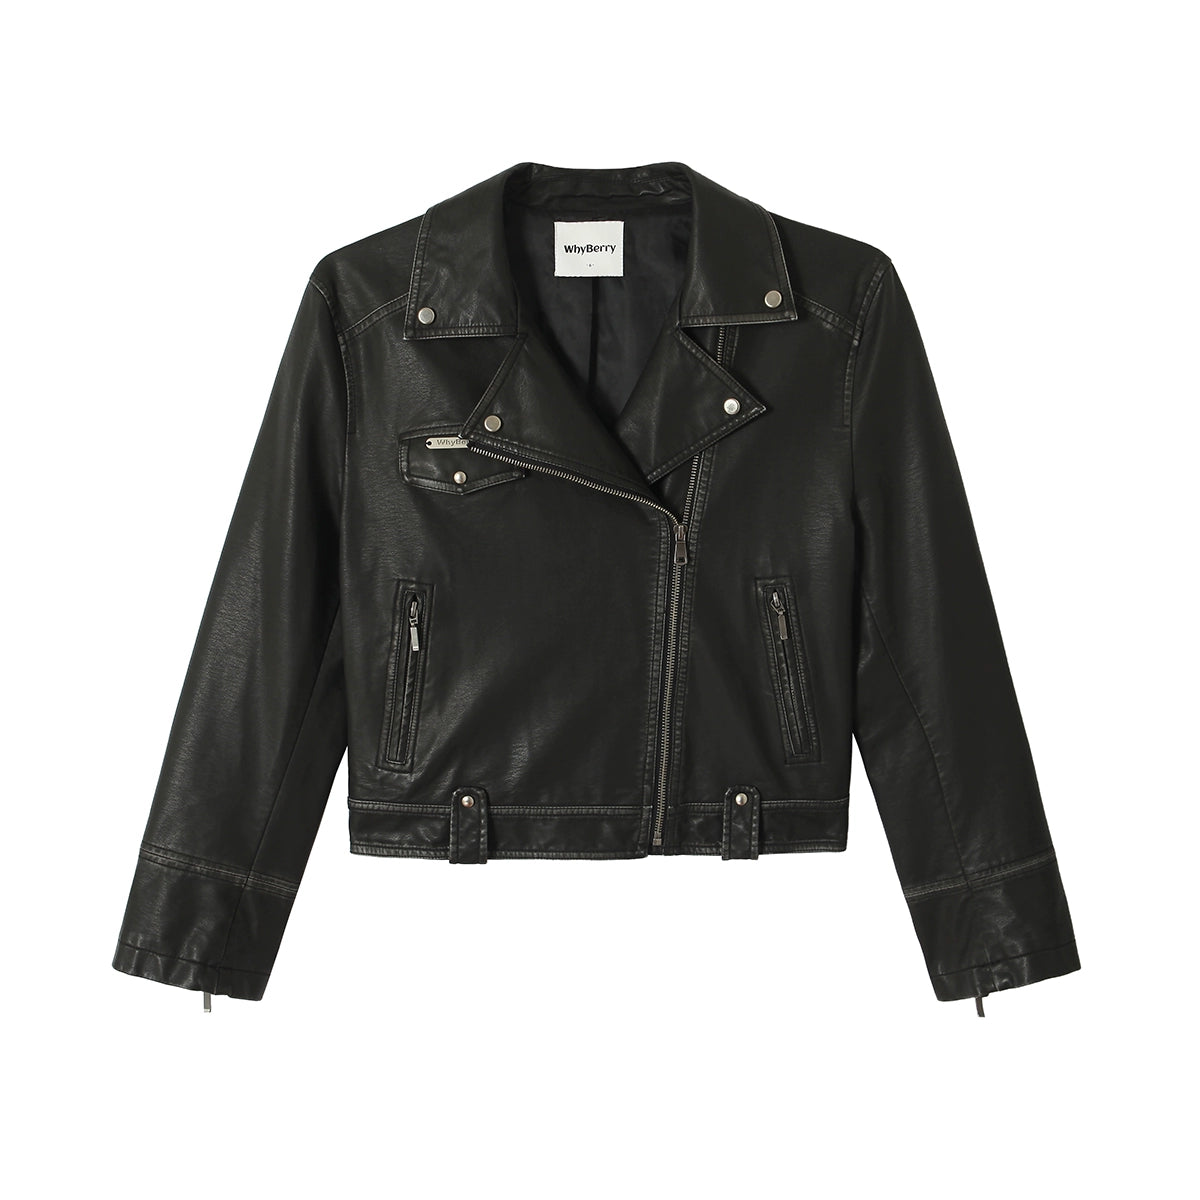 American vintage short leather jacket